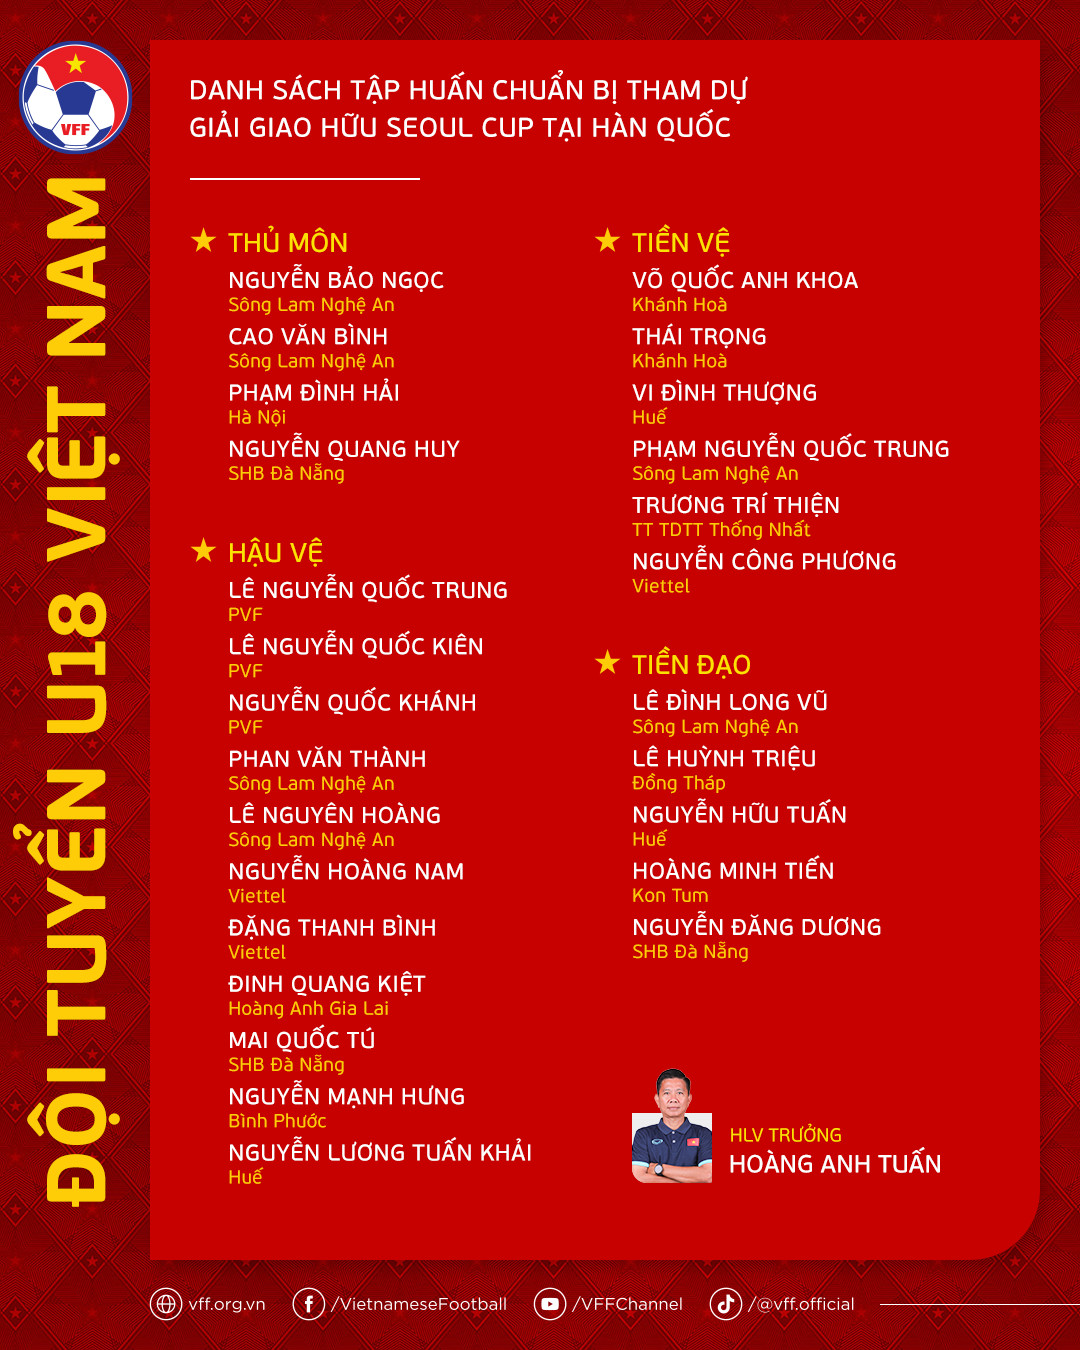 Bóng đá - Đội tuyển U18 Việt Nam hội quân chuẩn bị cho giải giao hữu quốc tế U18 Seoul EOU Cup 2023 (Hình 2).